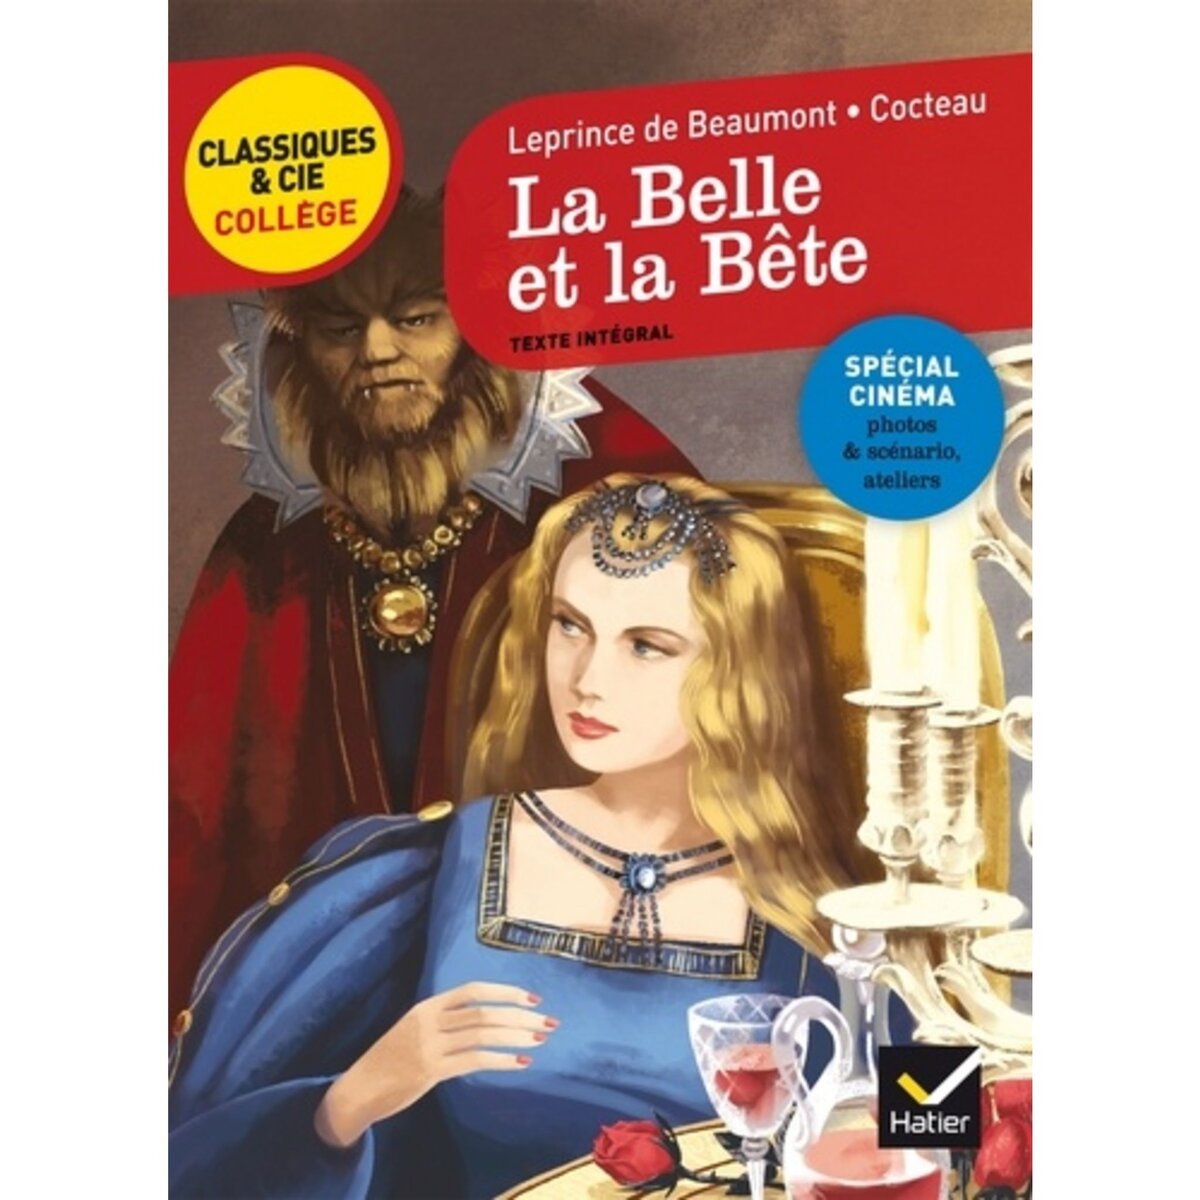  LA BELLE ET LA BETE. TEXTE INTEGRAL SUIVI DE LA BELLE ET LA BETE DE JEAN COCTEAU (1946), EXTRAITS DU SCENARIO, PHOTOS, Leprince de Beaumont Jeanne-Marie